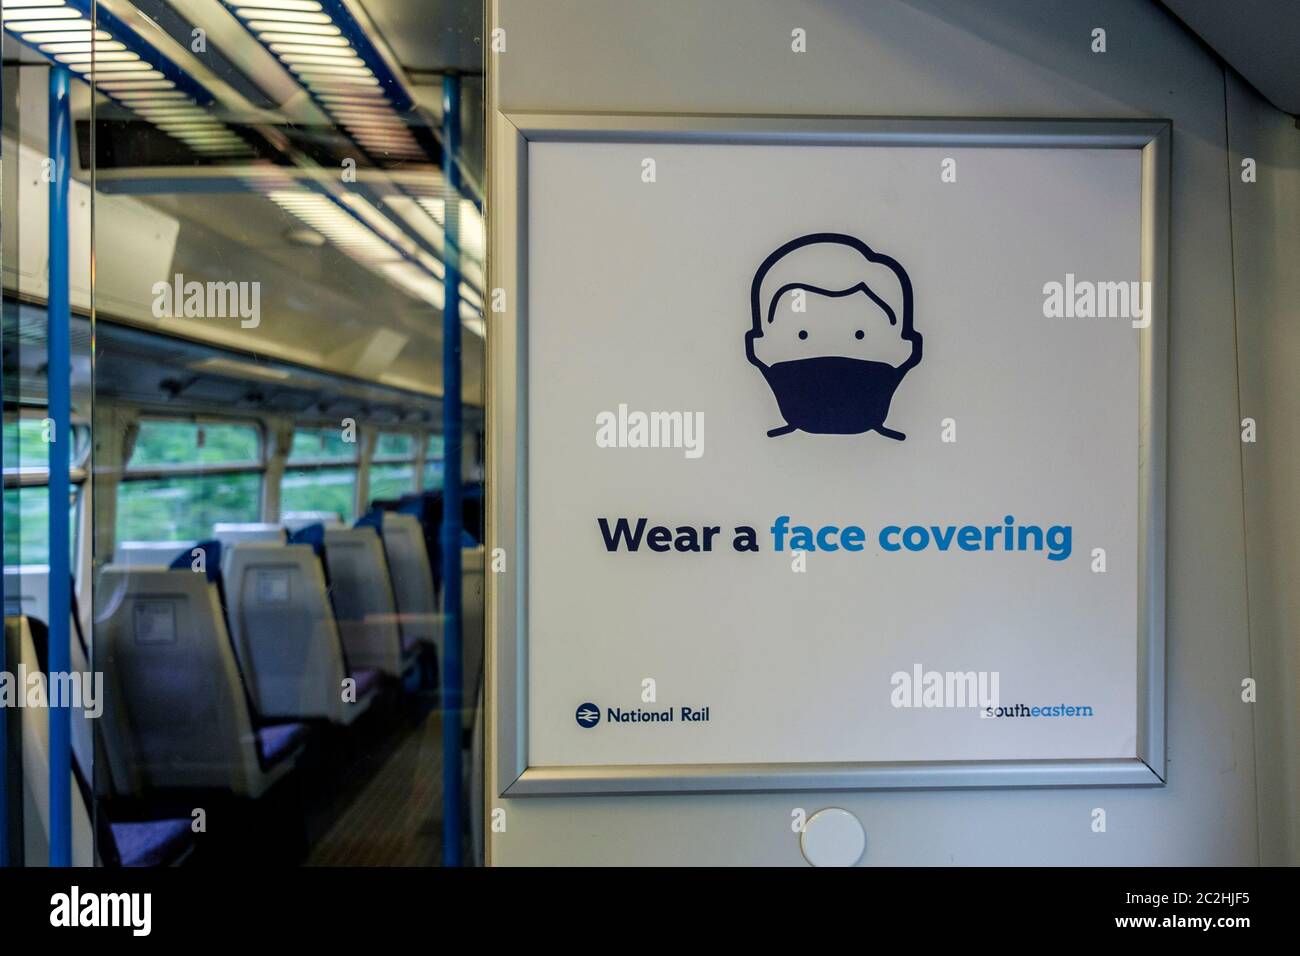 Juni 2020. Ein Schild auf einem südöstlichen Zug informiert die Fahrgäste, dass das Tragen von Gesichtsbezügen auf allen öffentlichen Verkehrsmitteln obligatorisch ist. London, Großbritannien. Stockfoto